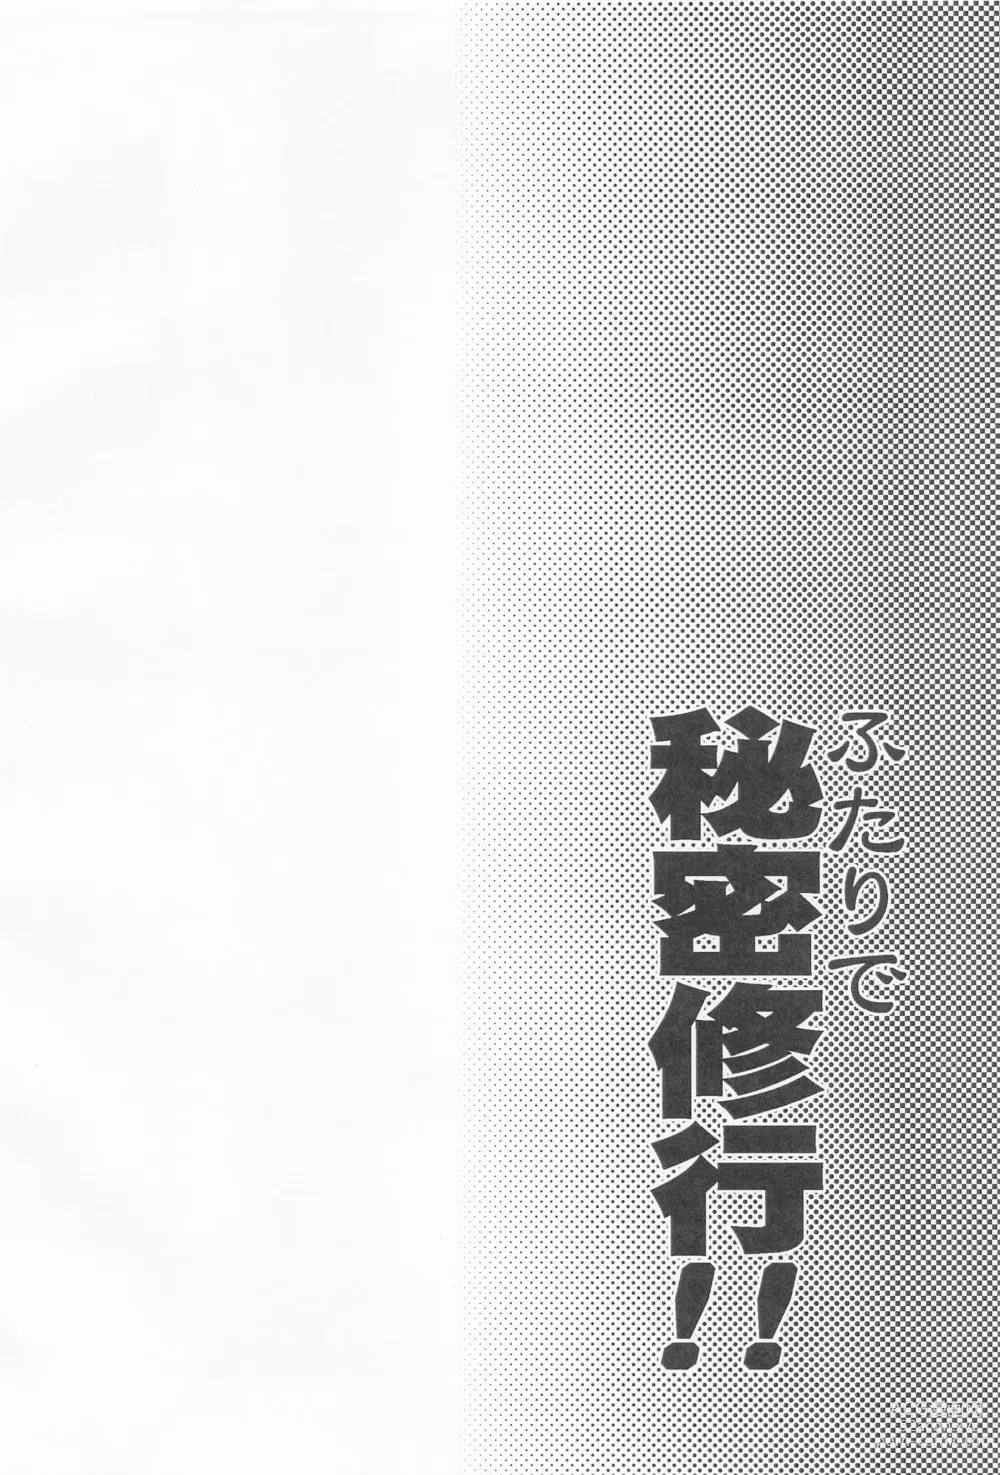 Page 3 of doujinshi Futari de Himitsu Shugyou!!